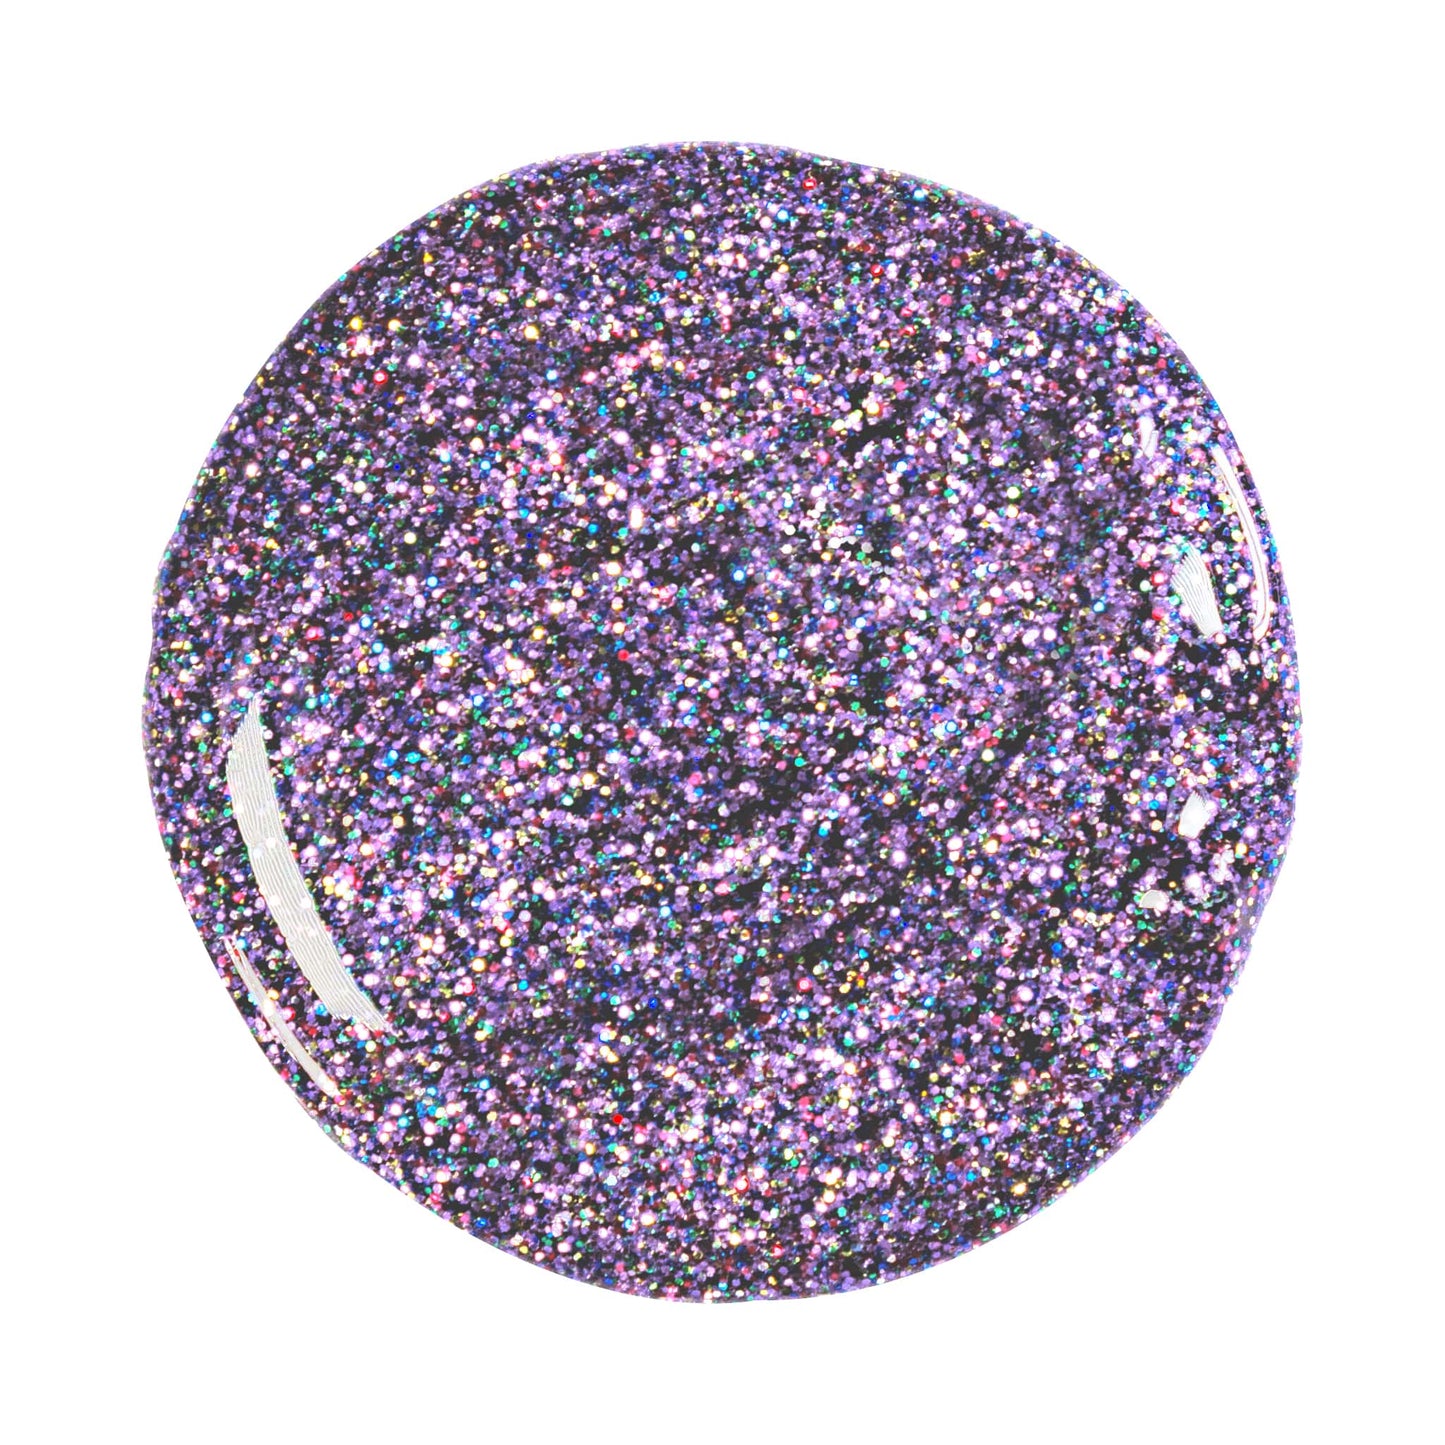 Effektgel Multi Glitter purple